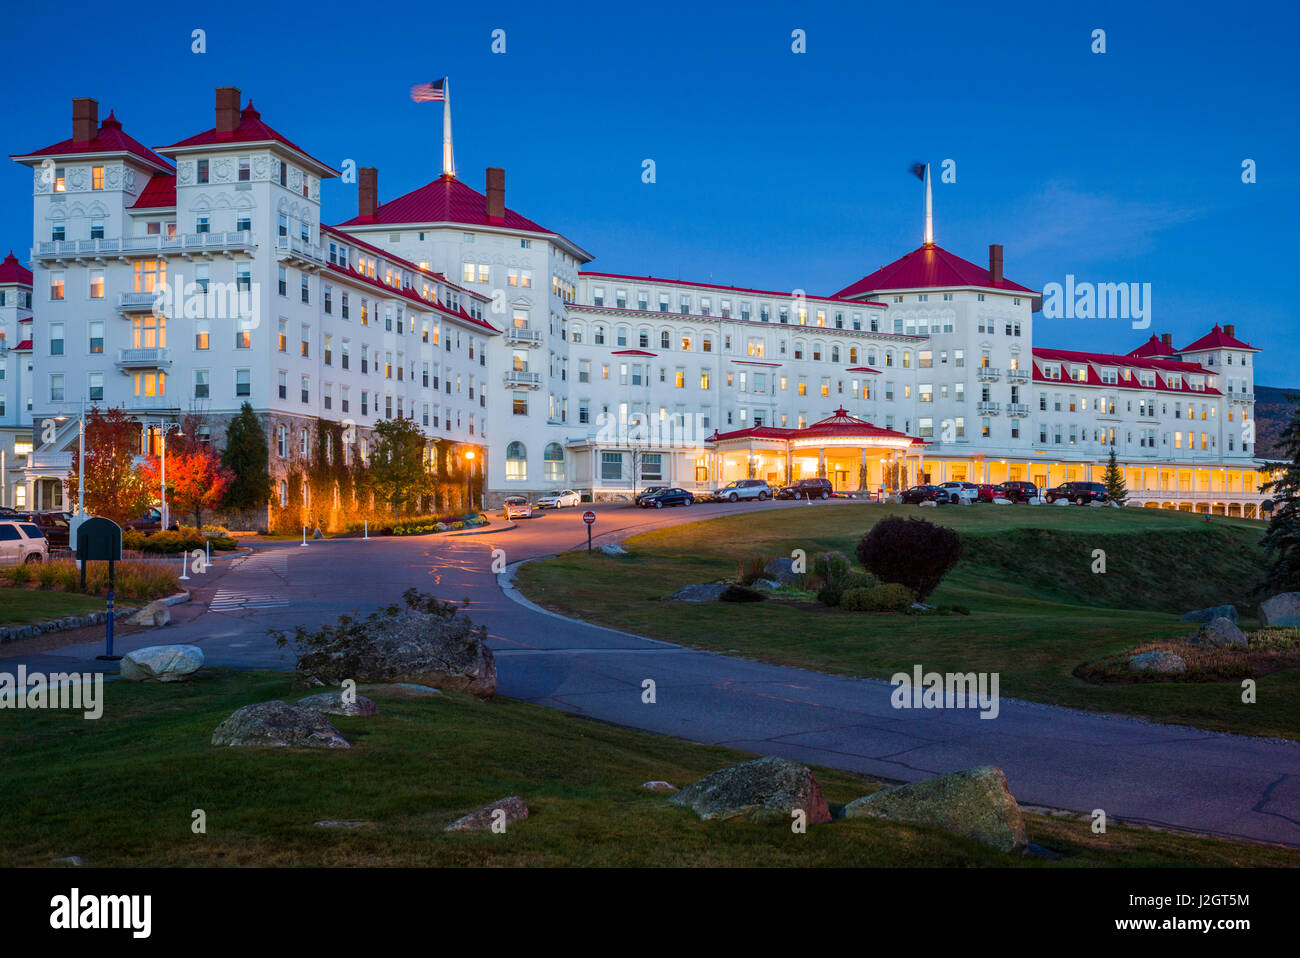 USA, New Hampshire, White Mountains, Bretton Woods, Mount Washington Hotel, exterior, evening Stock Photo